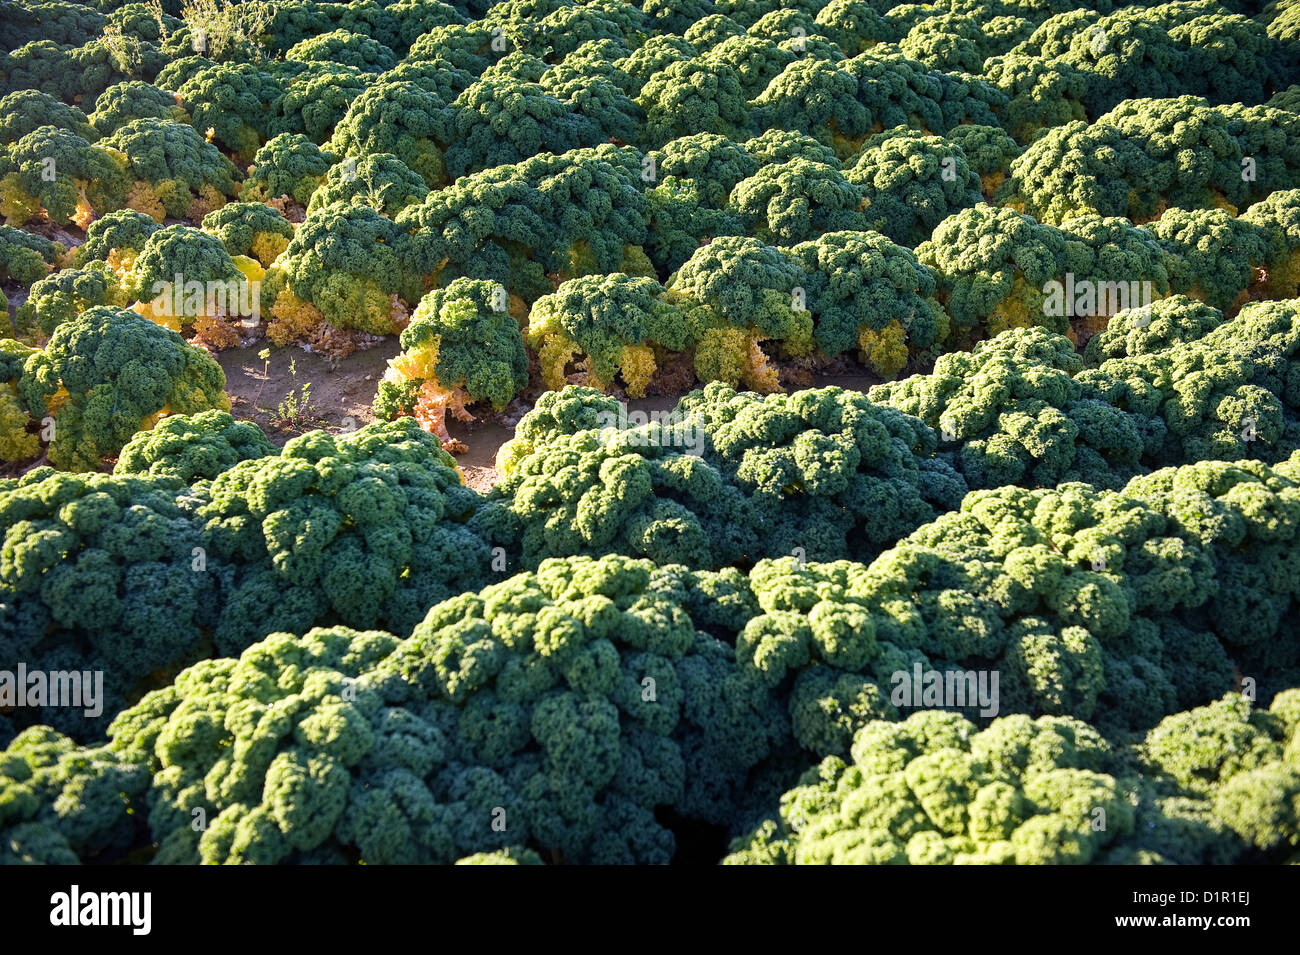 Brassica oleracea (Kale Kapitan) guardando come una foresta pluviale amazzonica visto dall'aria. Foto Stock